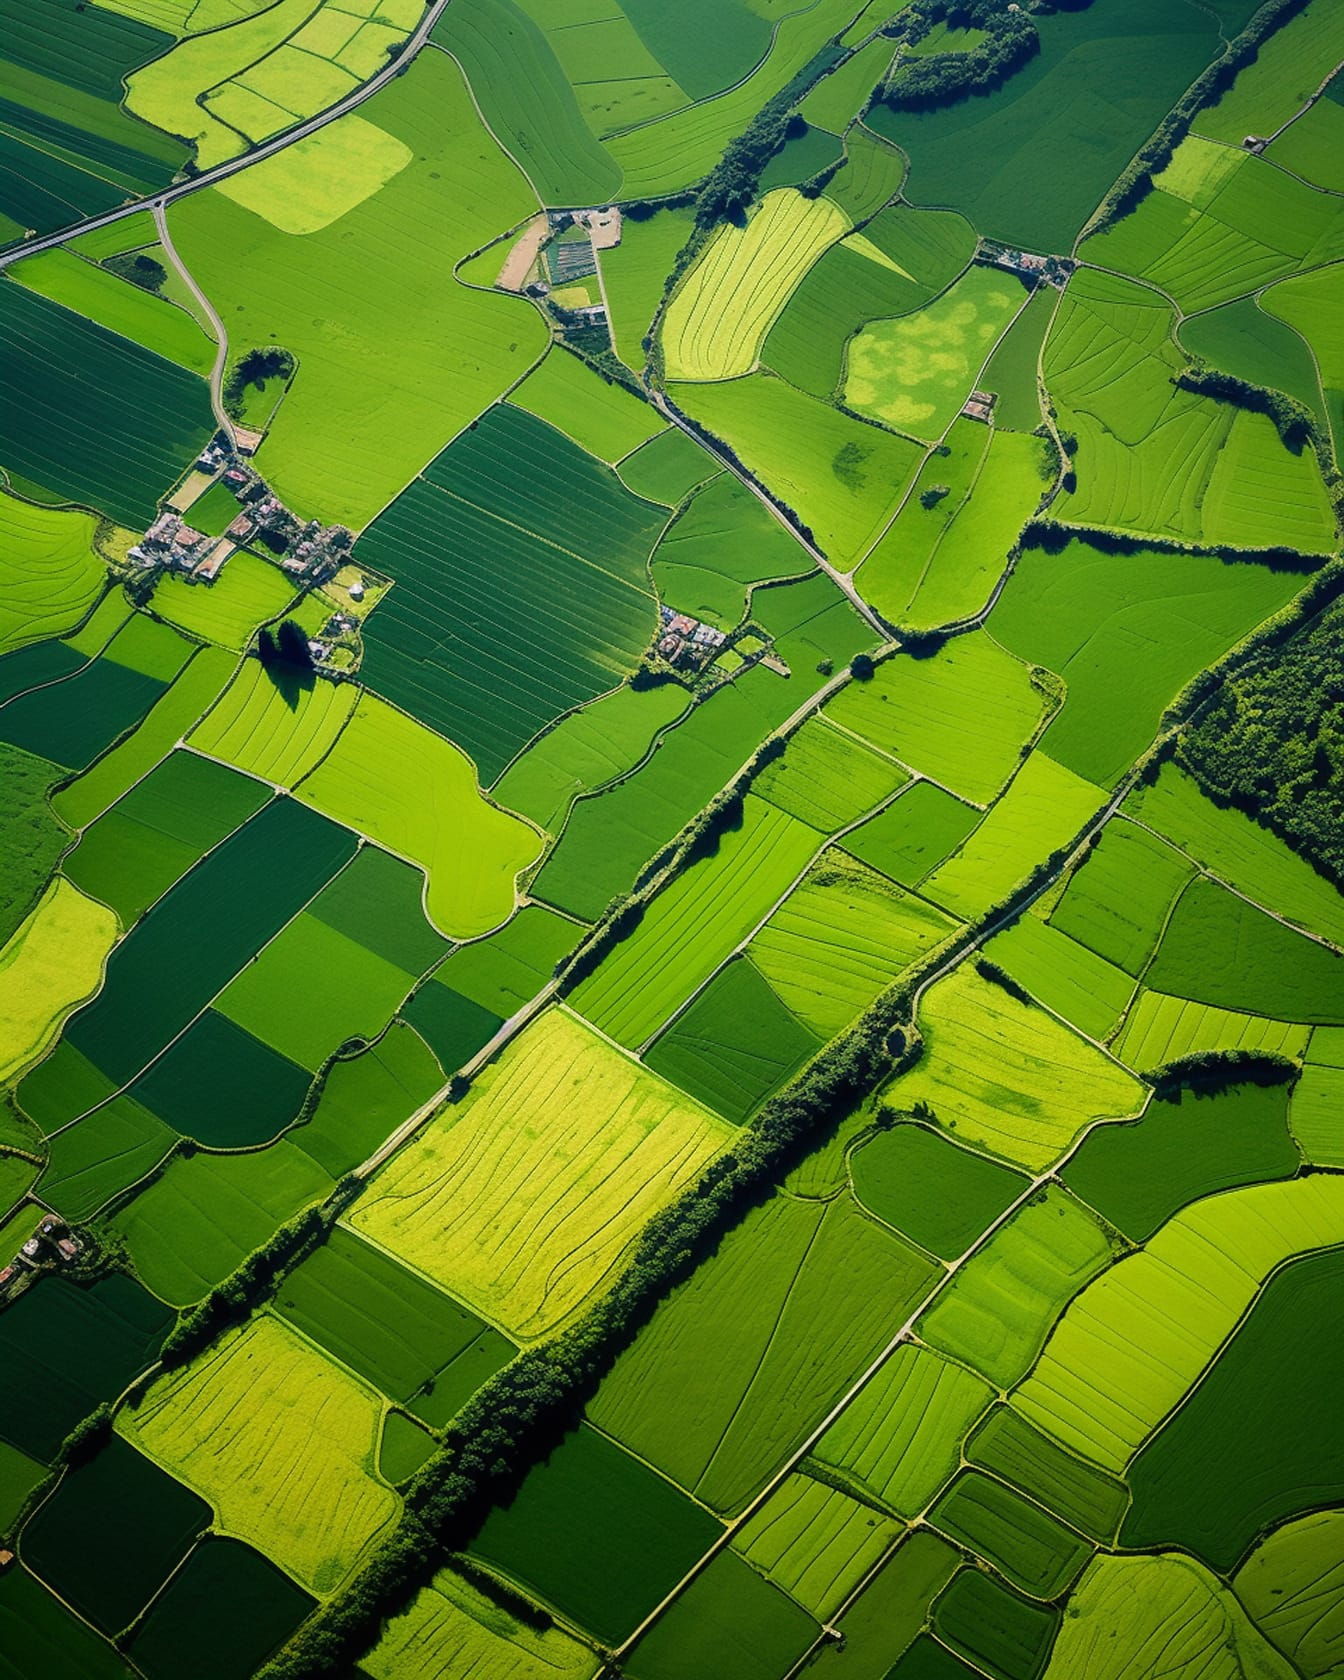 Grafico aereo di campi giallo verdastri in un’area rurale